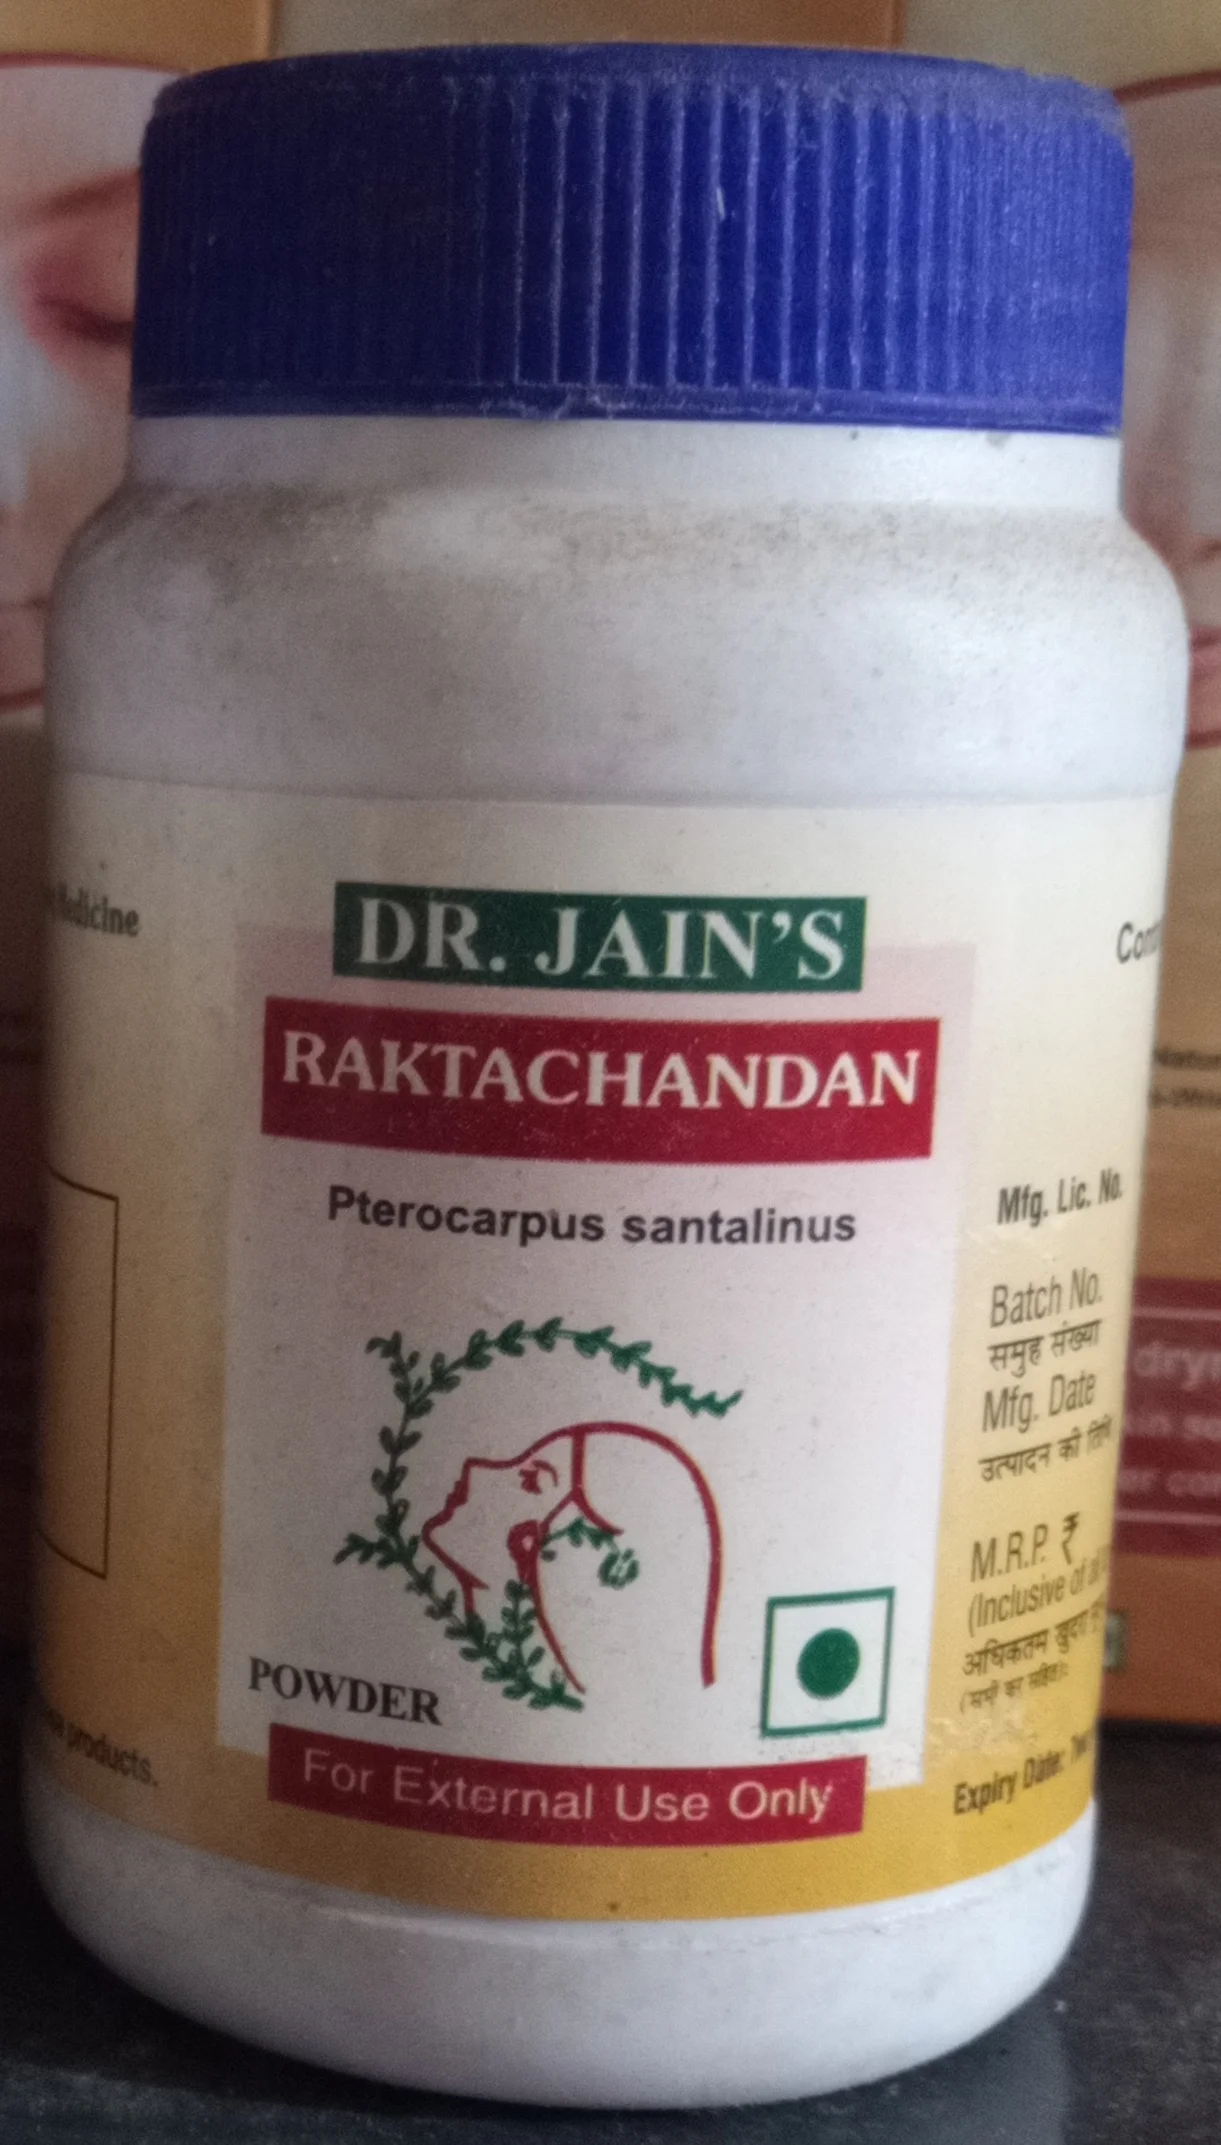 Raktachandan Powder 50gm upto 10% off Dr Jains Forest Herbals